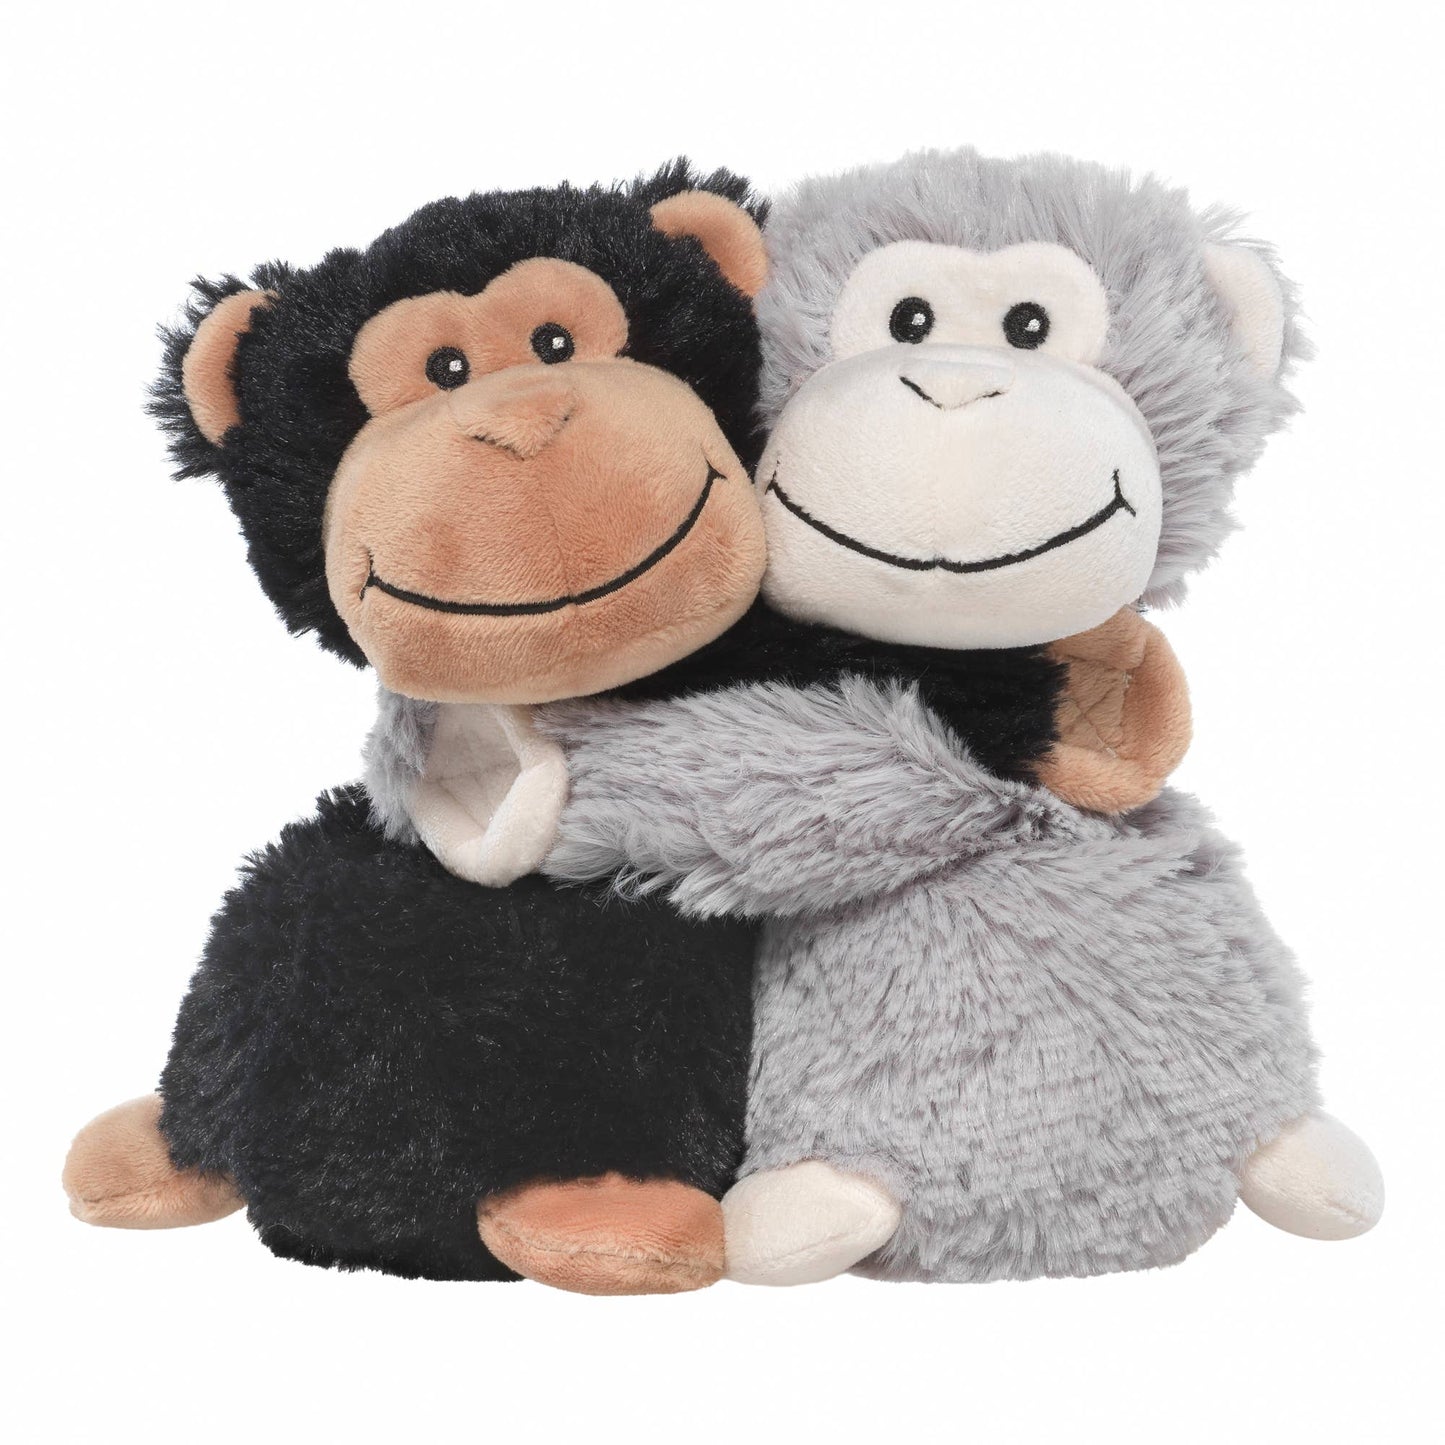 Warmies - Monkey Hugs Warmies